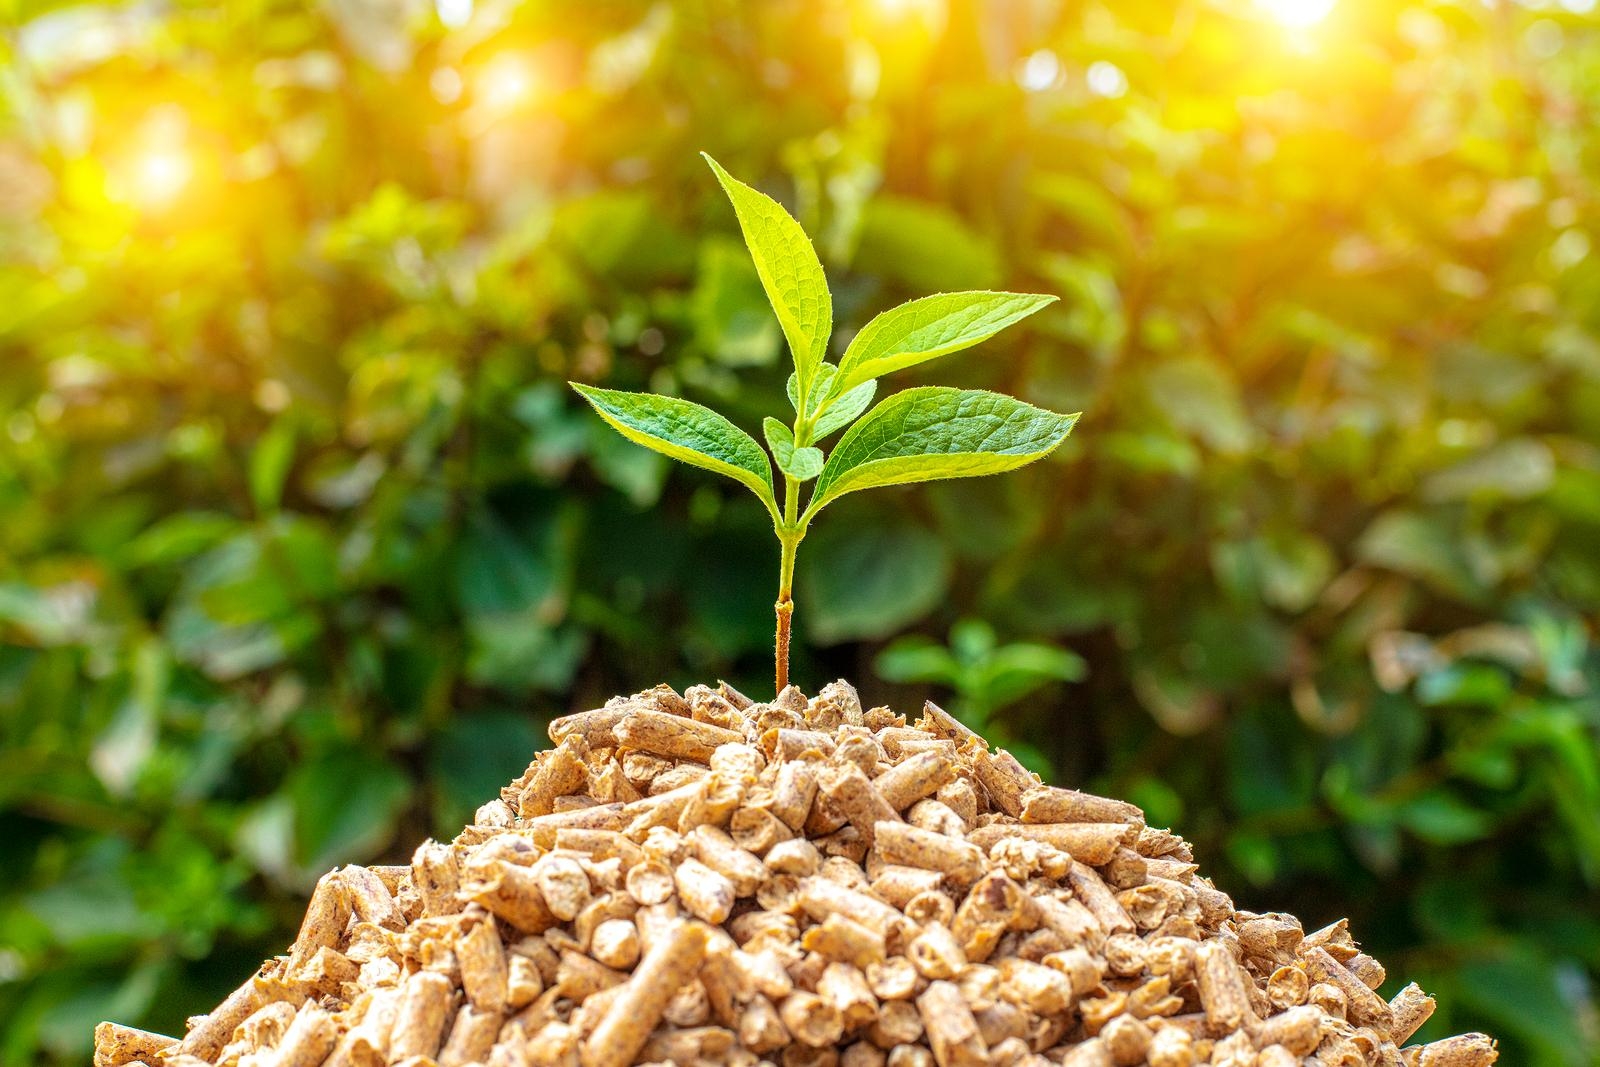 Chế biến năng lượng sinh khối từ phế phẩm nông nghiệp đem lại giá trị kinh tế cao đóng góp vào sự nghiệp bảo vệ môi trường nói chung